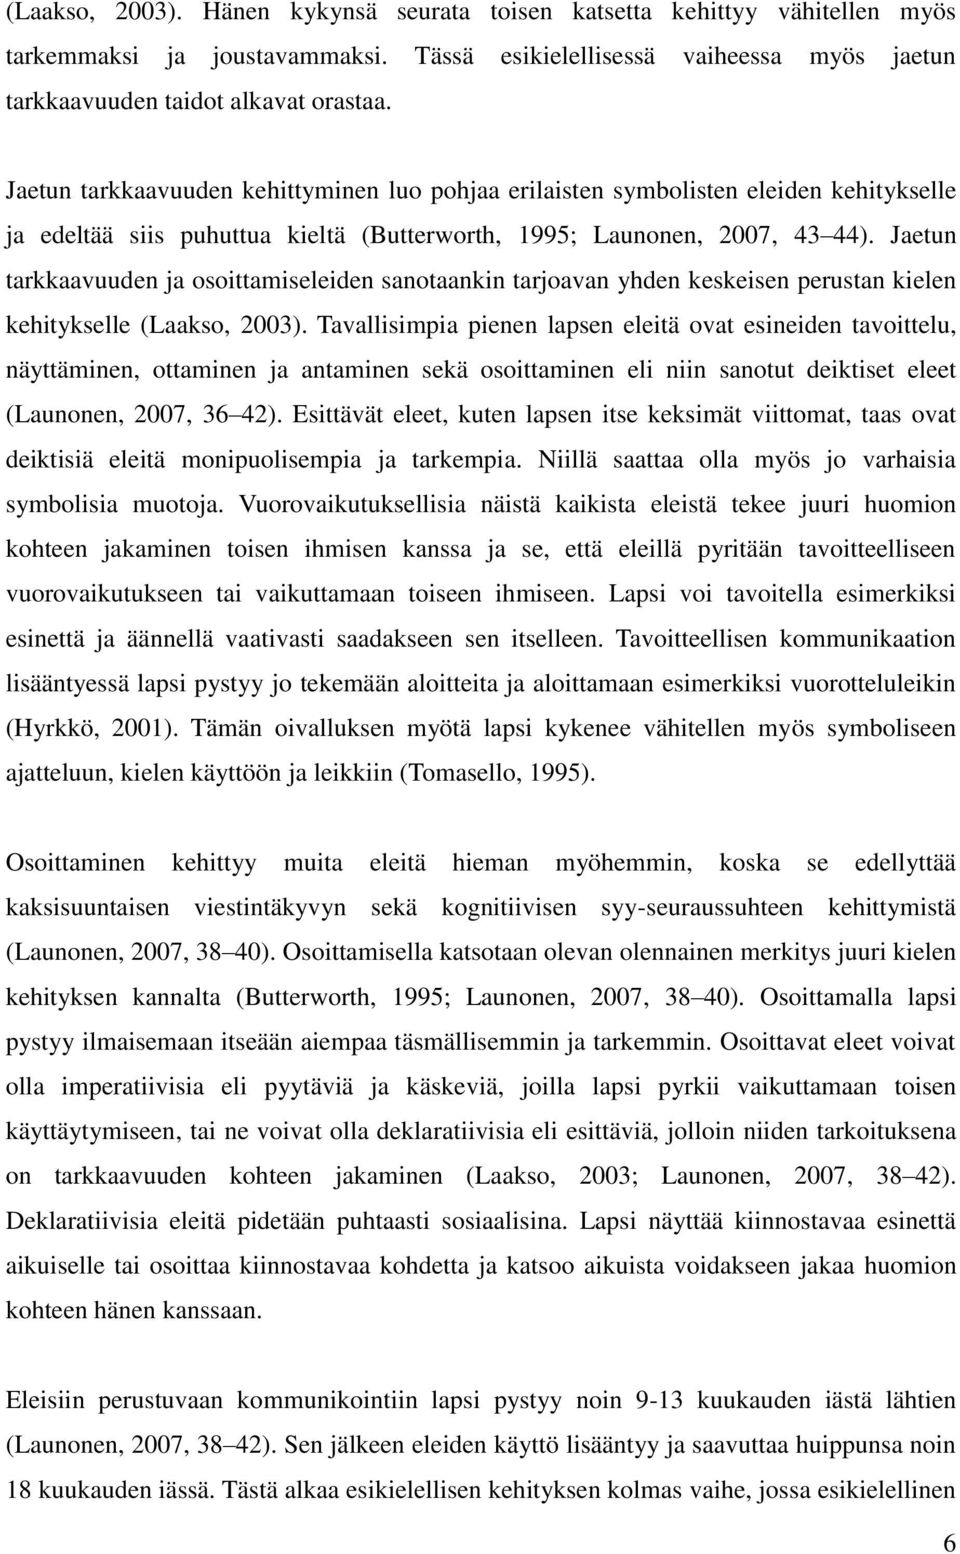 Jaetun tarkkaavuuden ja osoittamiseleiden sanotaankin tarjoavan yhden keskeisen perustan kielen kehitykselle (Laakso, 2003).